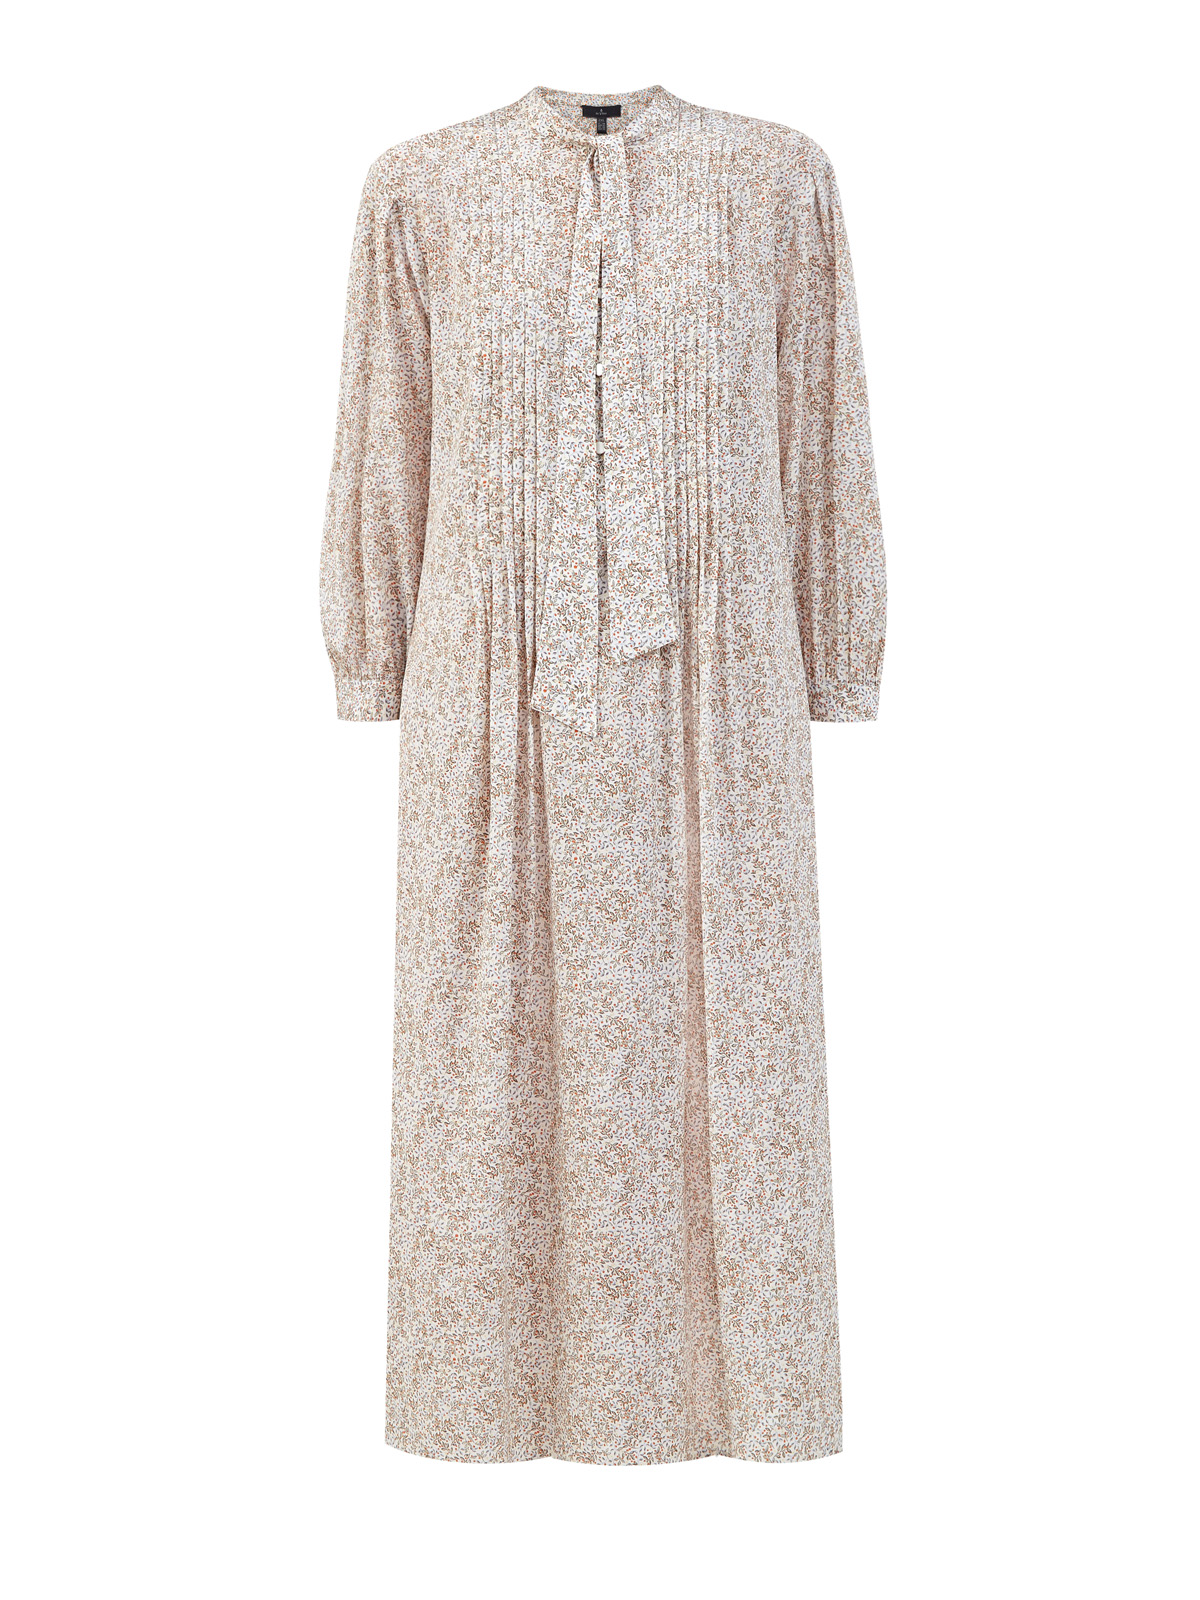 Шелковое платье-рубашка с принтом и лентой в тон